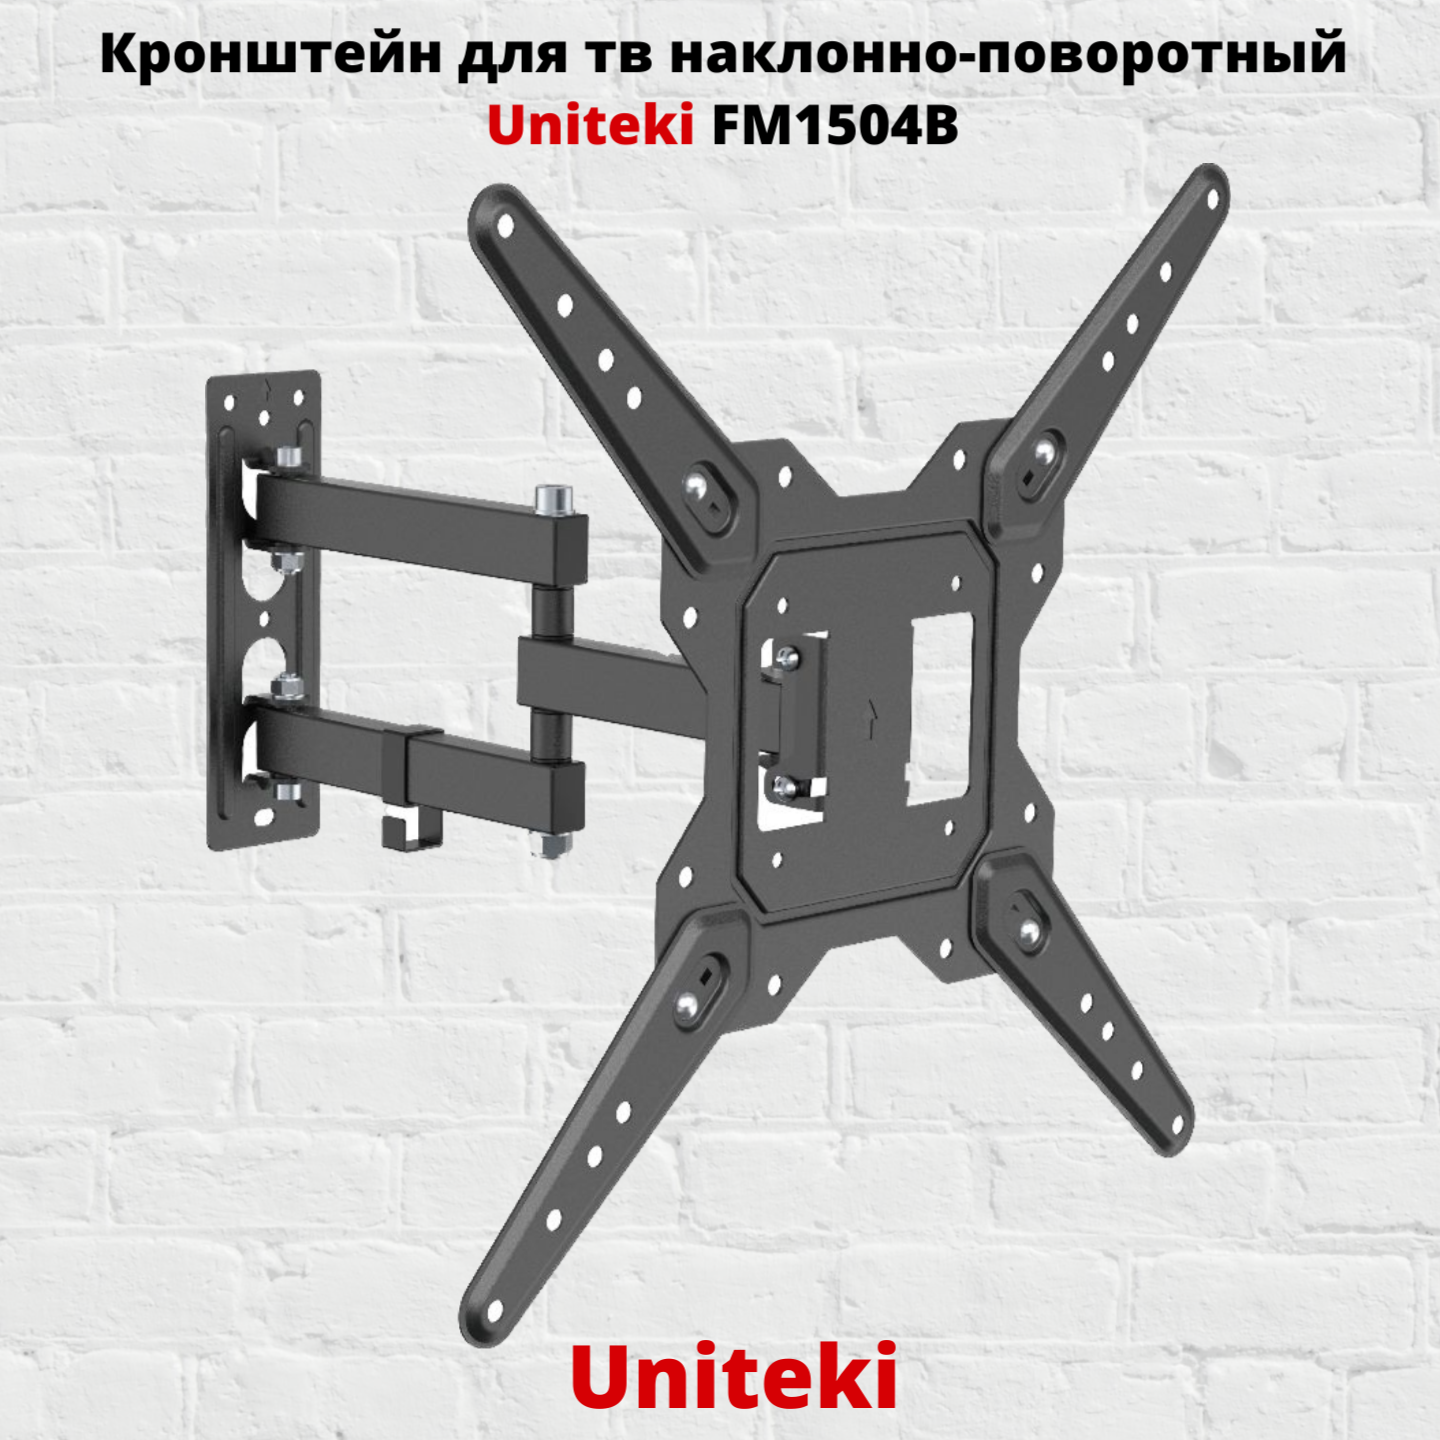 Наклонно-поворотный кронштейн для телевизора Uniteki FM1504B 23-55 черный